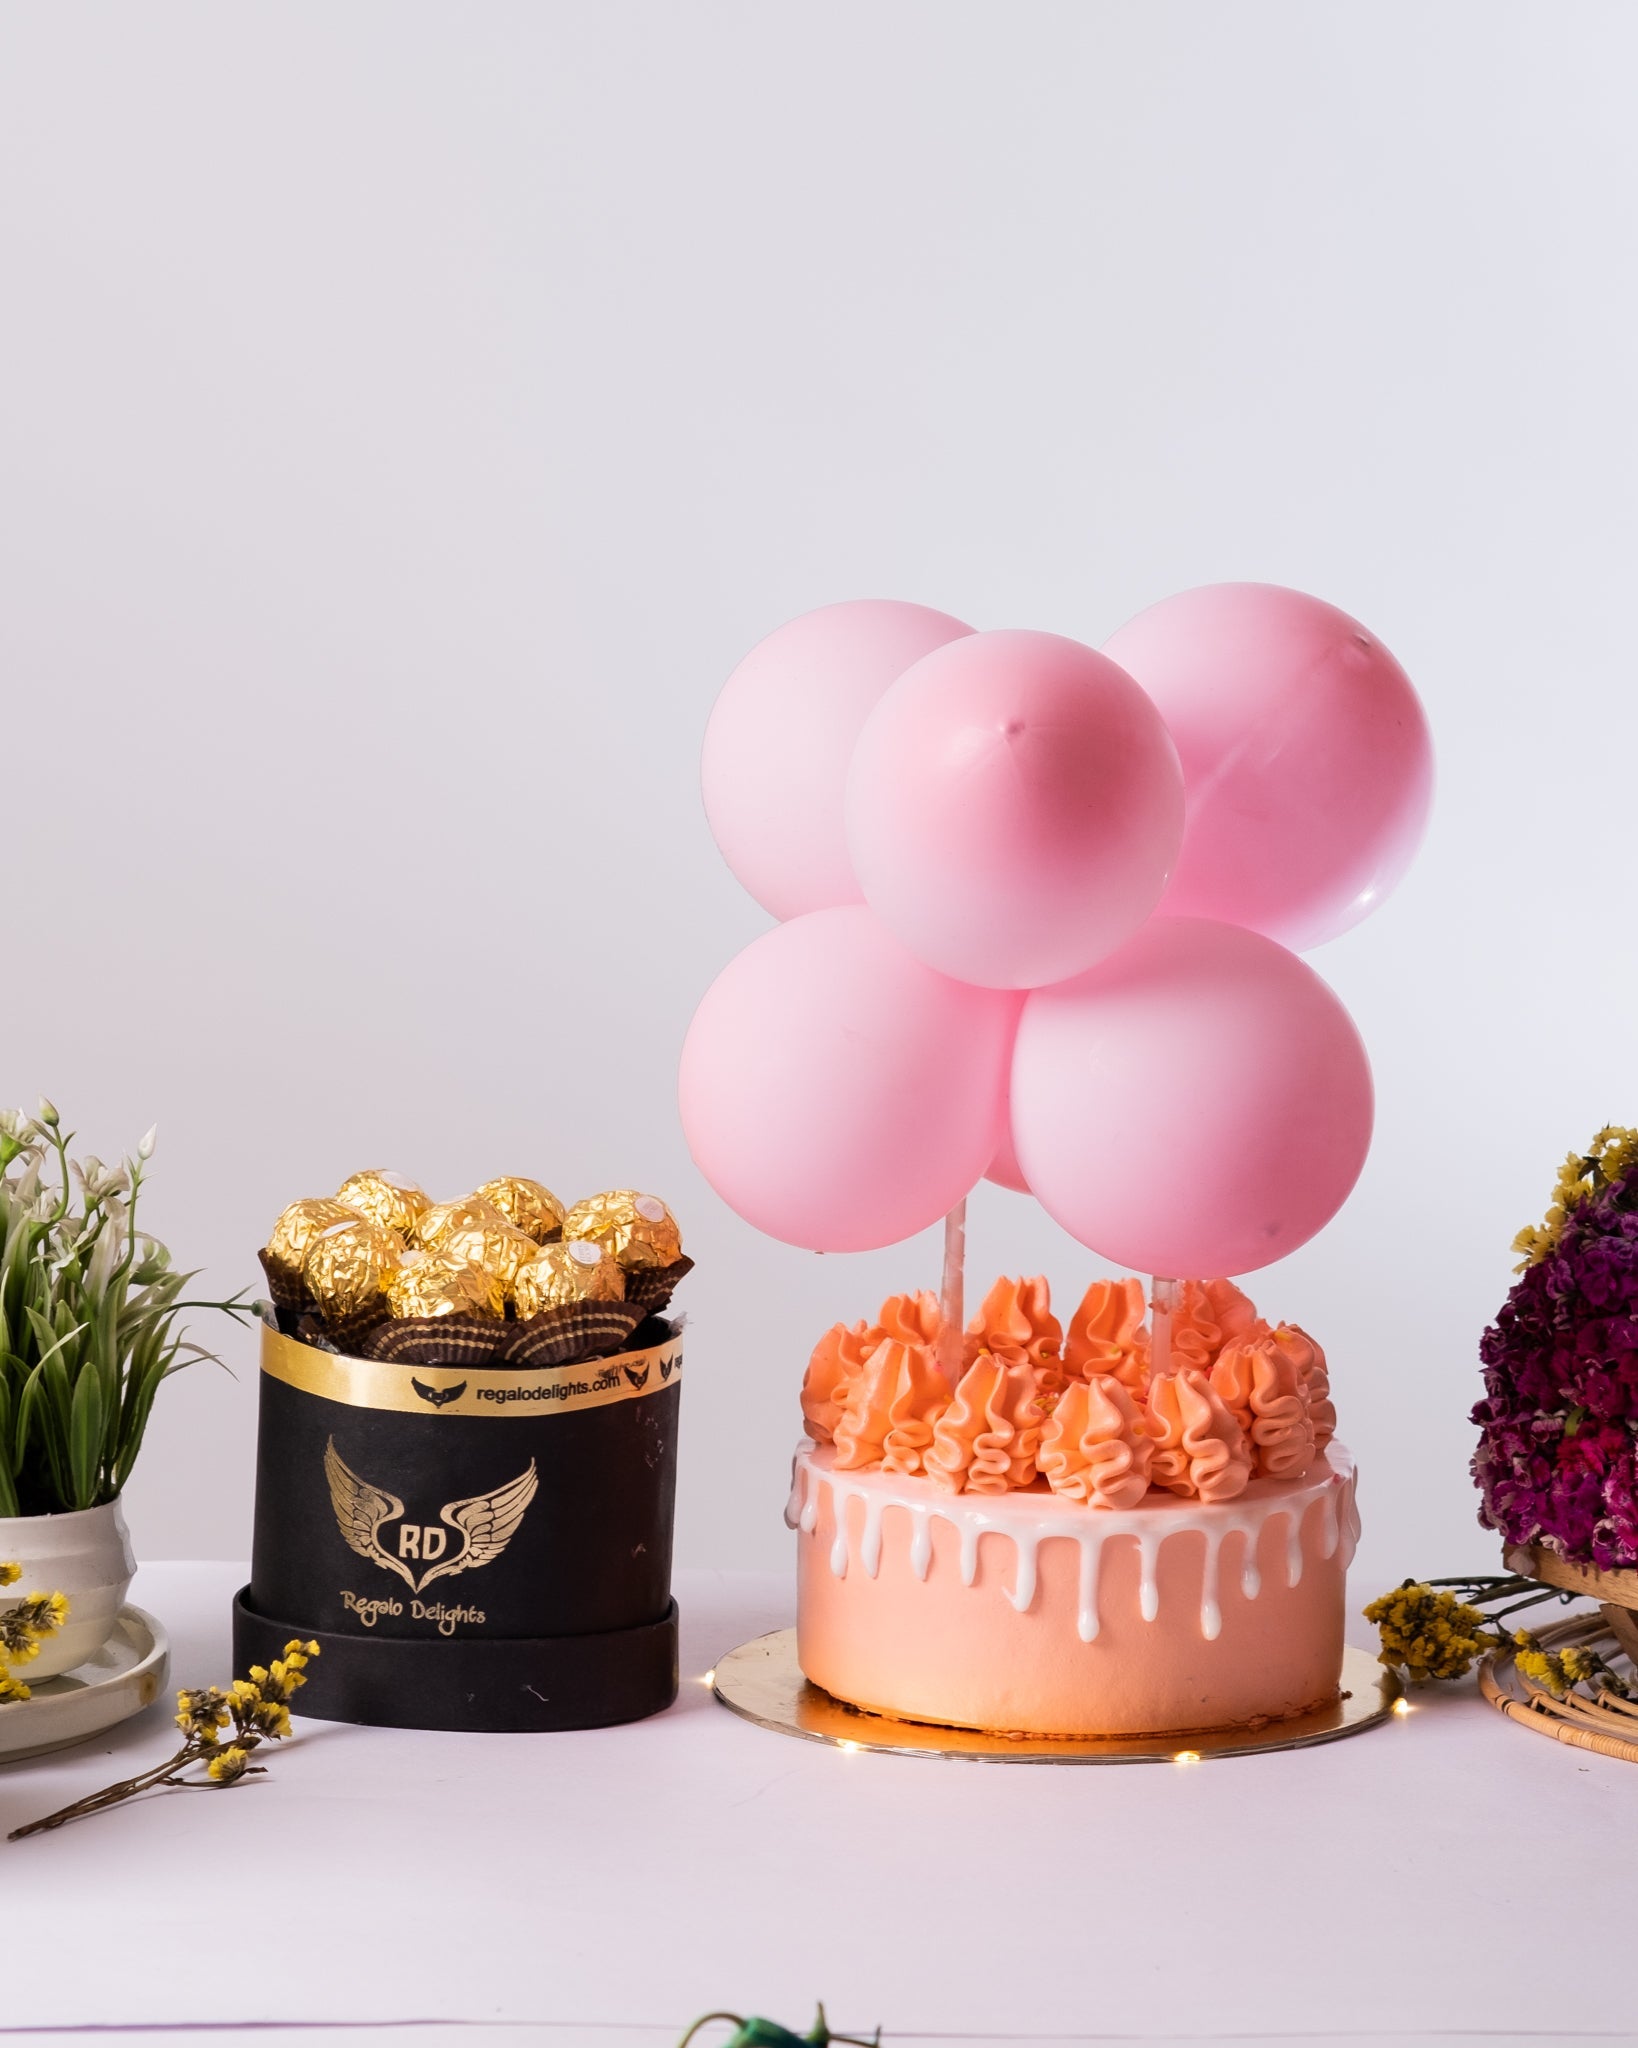 Pretty Pink Fondle Cake & Ferrero Rochers Regalo Delights